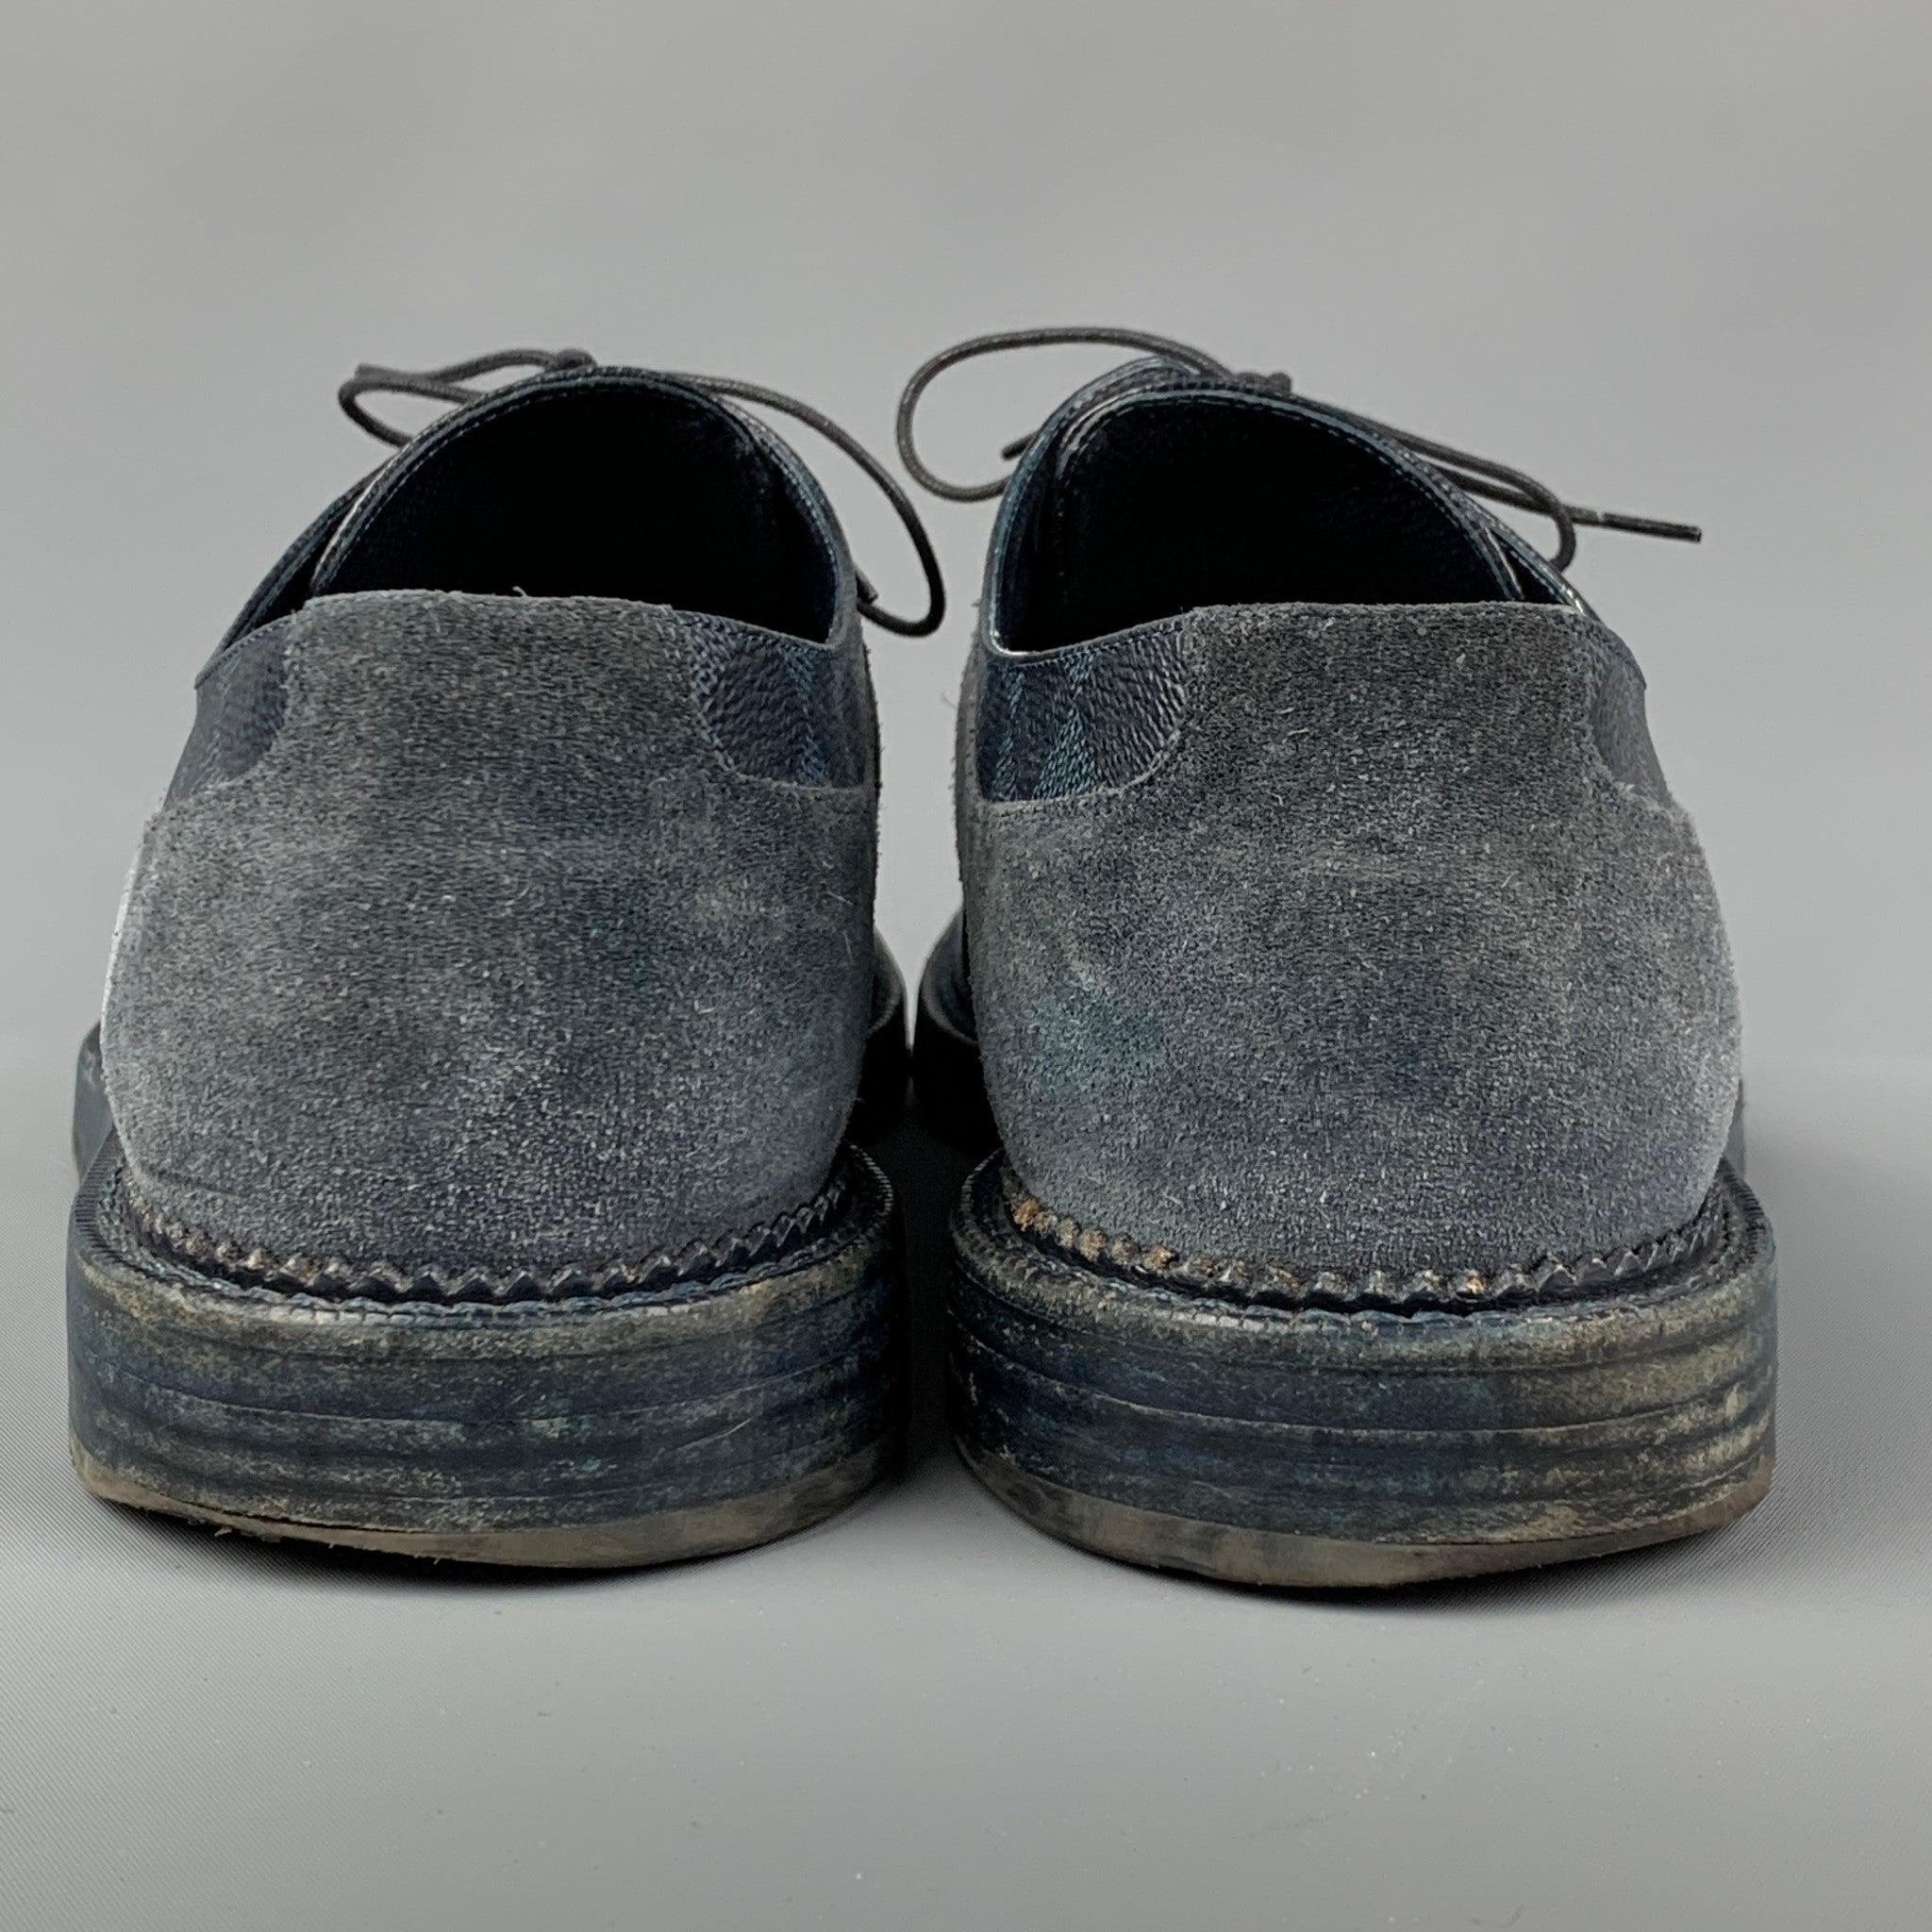 LOUIS VUITTON Size 10.5 Navy Blue Damier Leather Lace Up Shoes 1